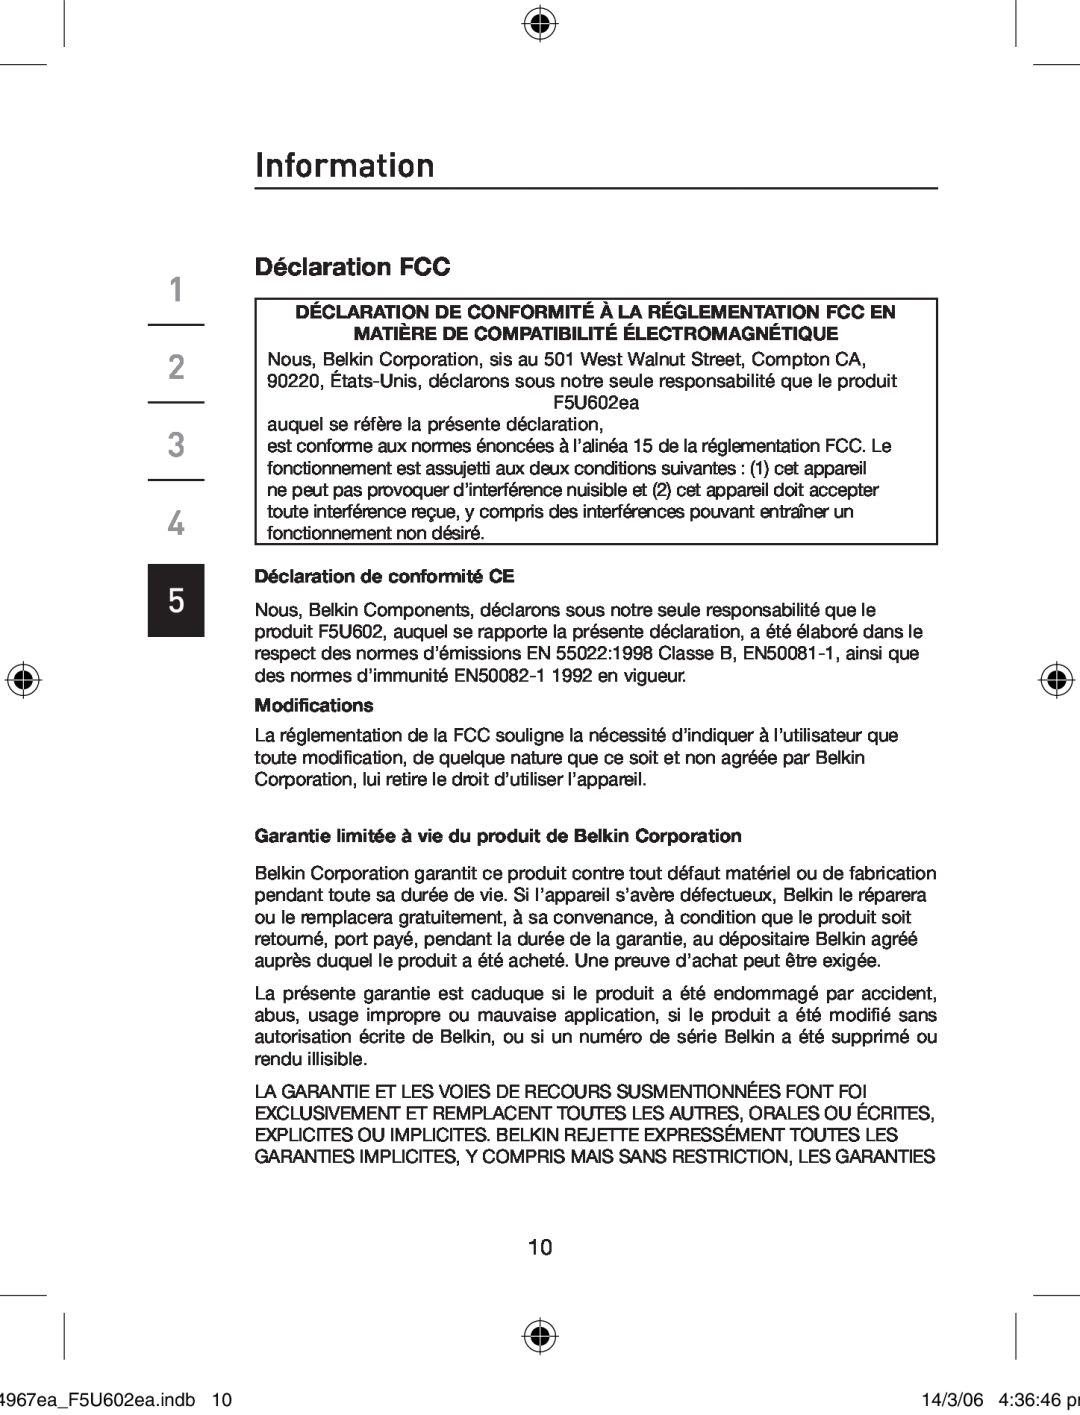 Belkin F5U602EA Déclaration FCC, Information, Déclaration De Conformité À La Réglementation Fcc En, Modifications 